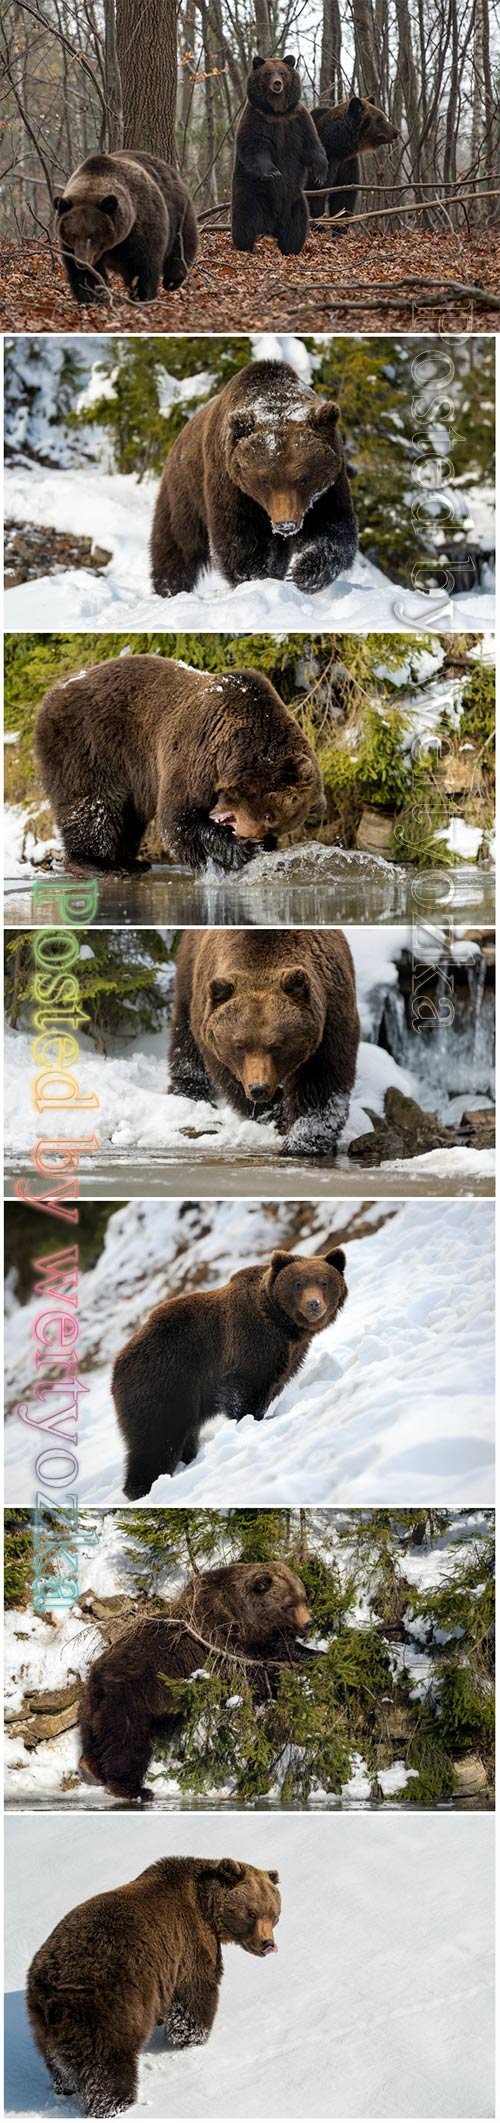 Wild brown bear beautiful stock photo